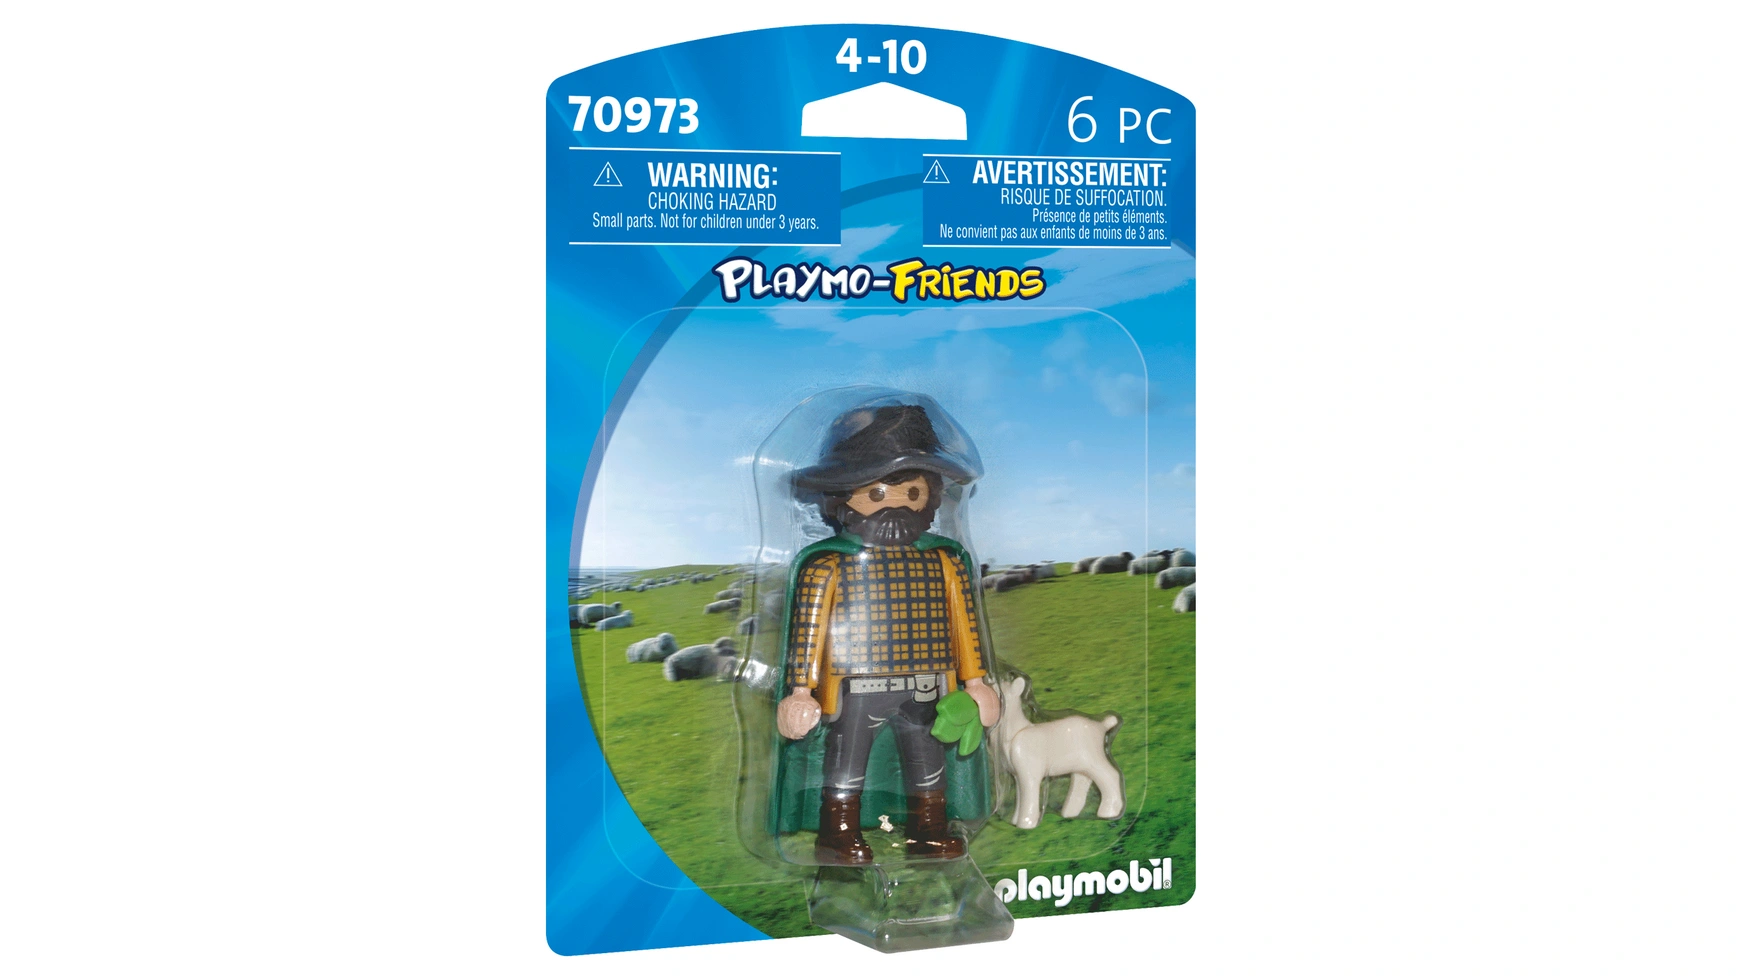 друзья playmo флорист playmobil Playmo friends овца-овчарка Playmobil